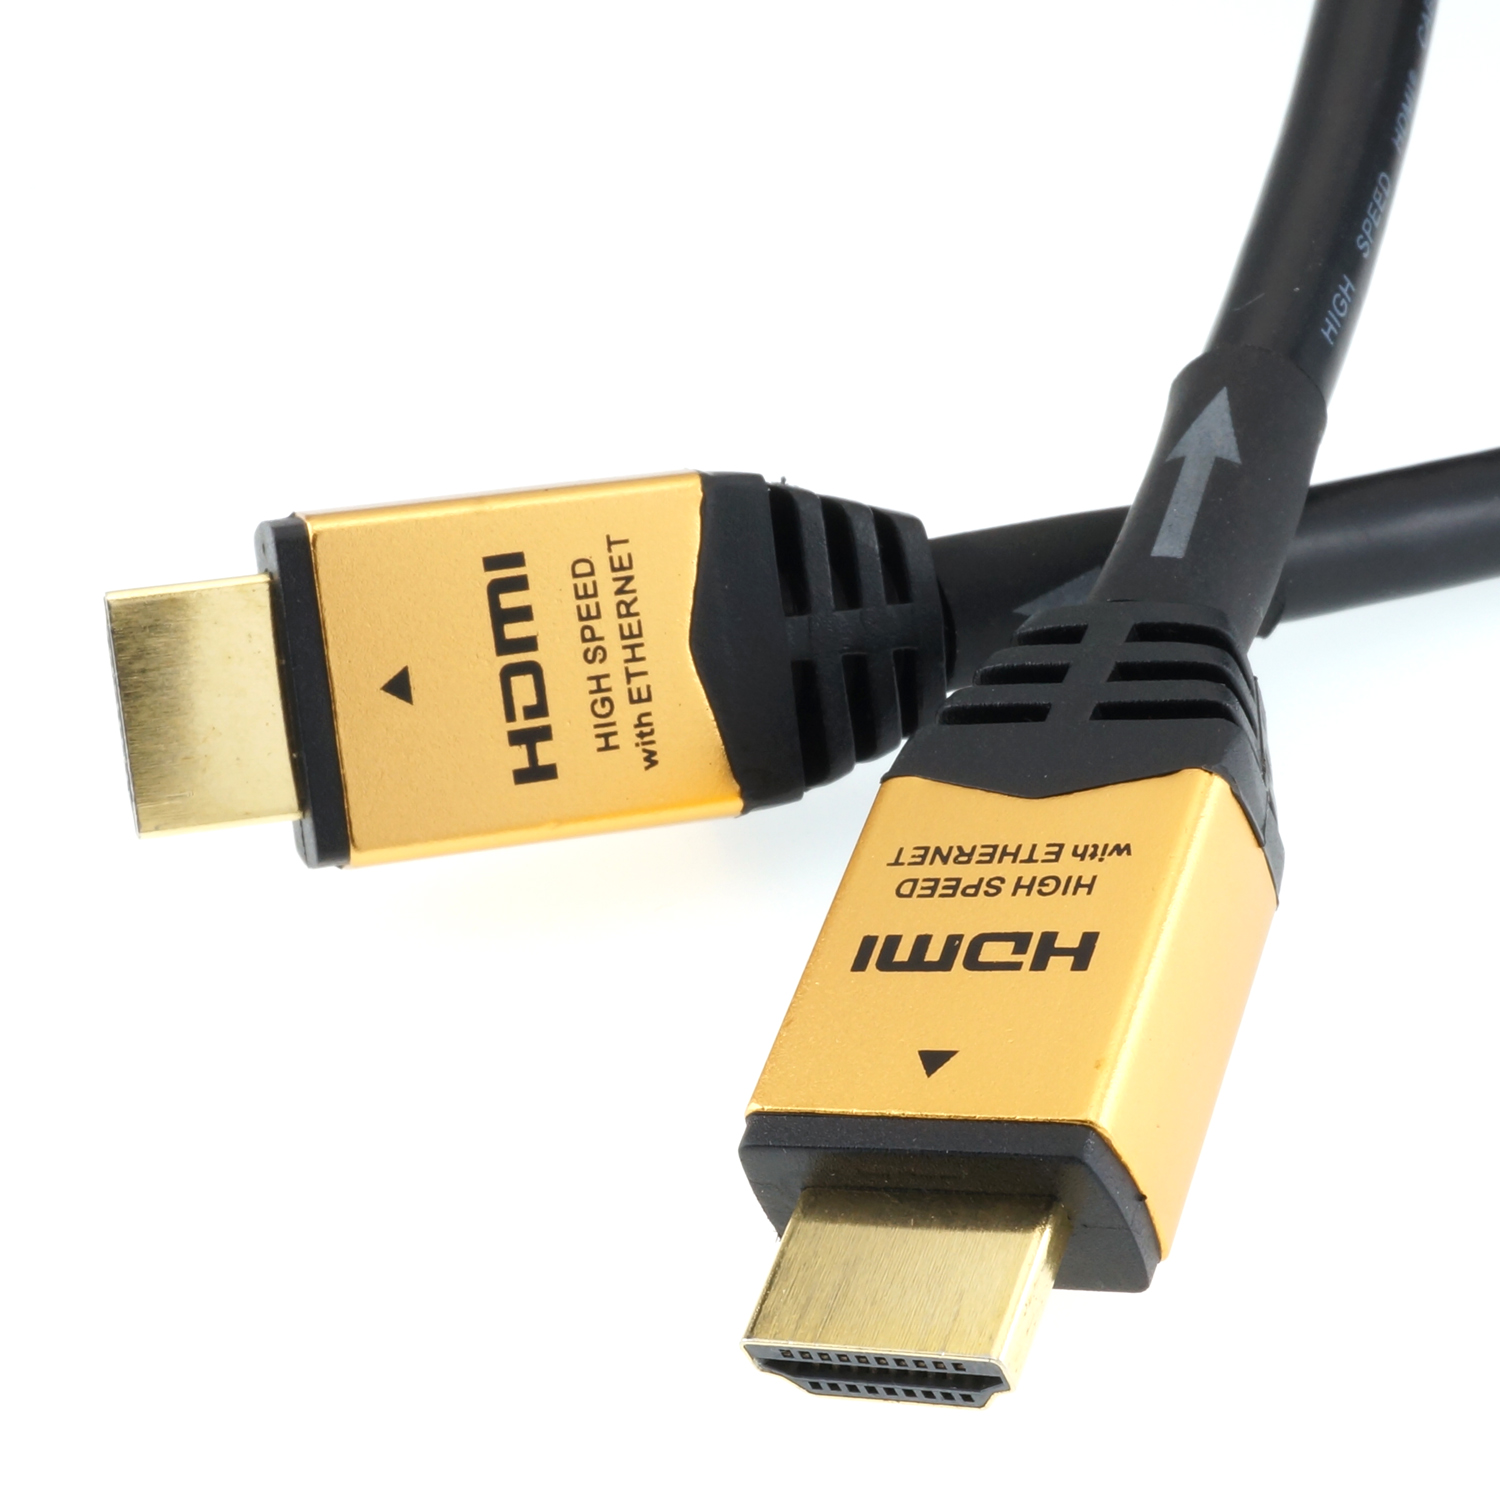 ホーリックダイレクト HDMIケーブル イコライザー内蔵型 30m ゴールド HDM300-595GD